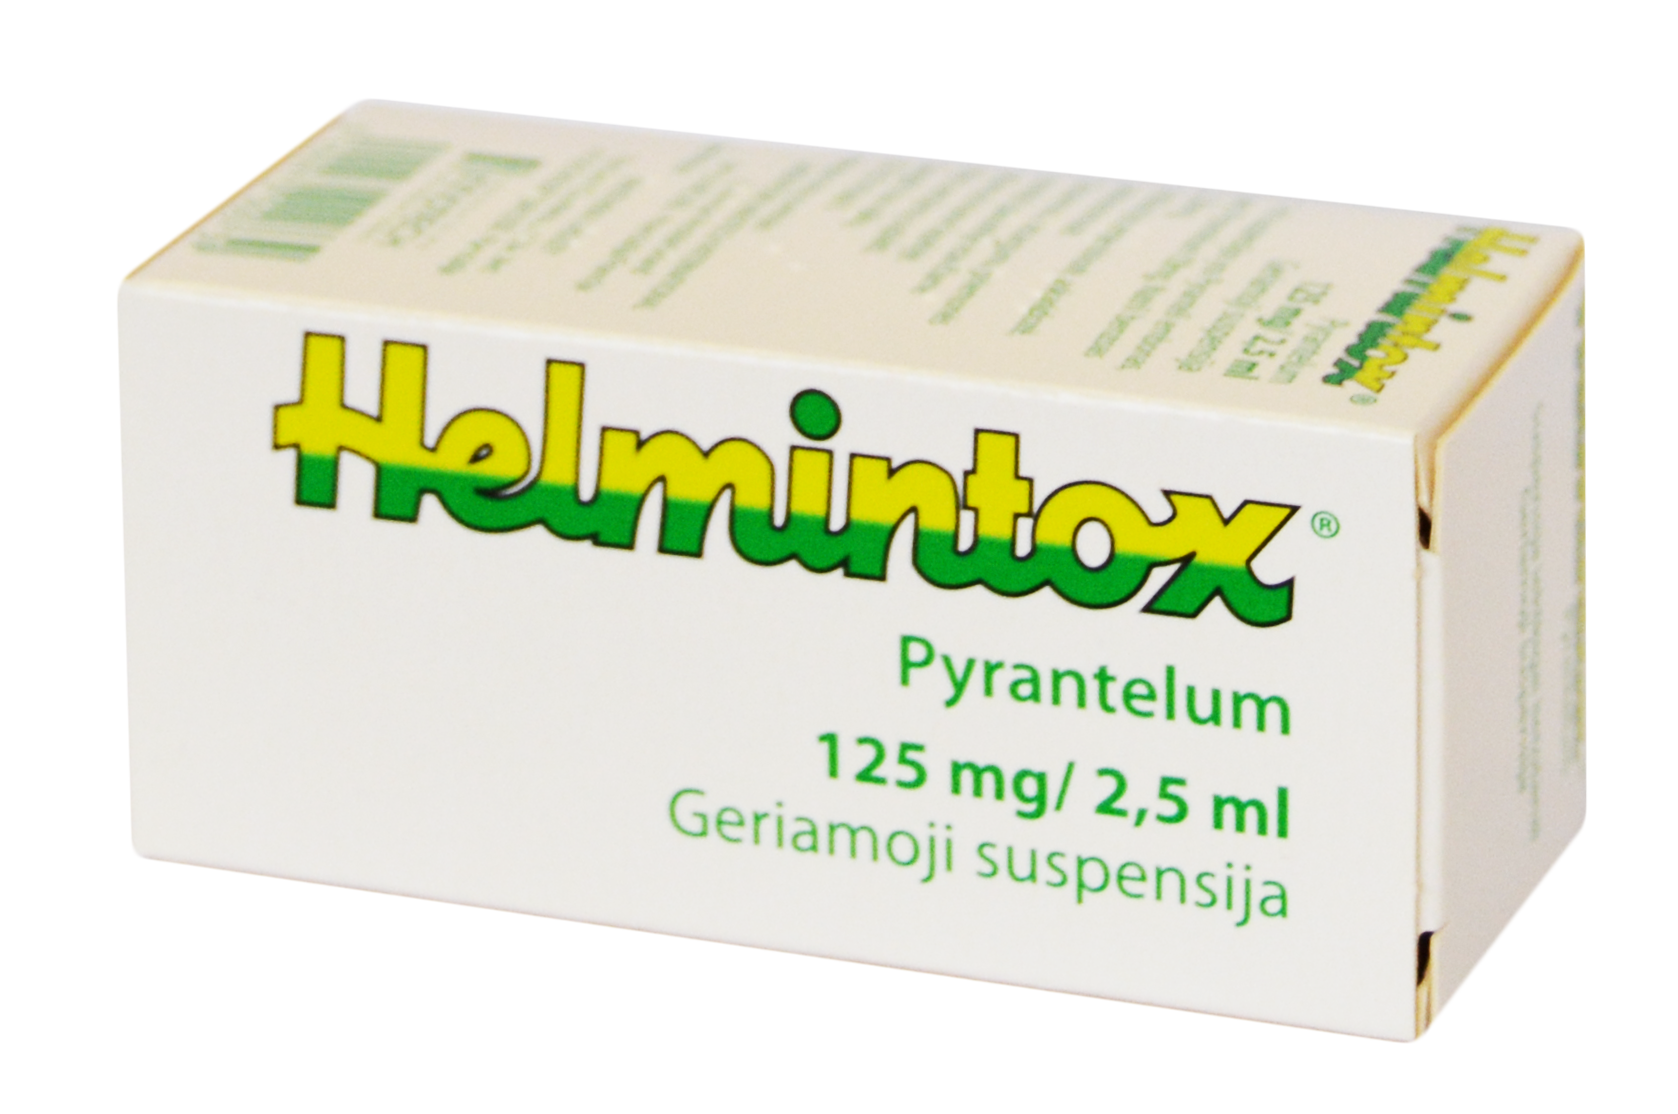 helmintox equivalent